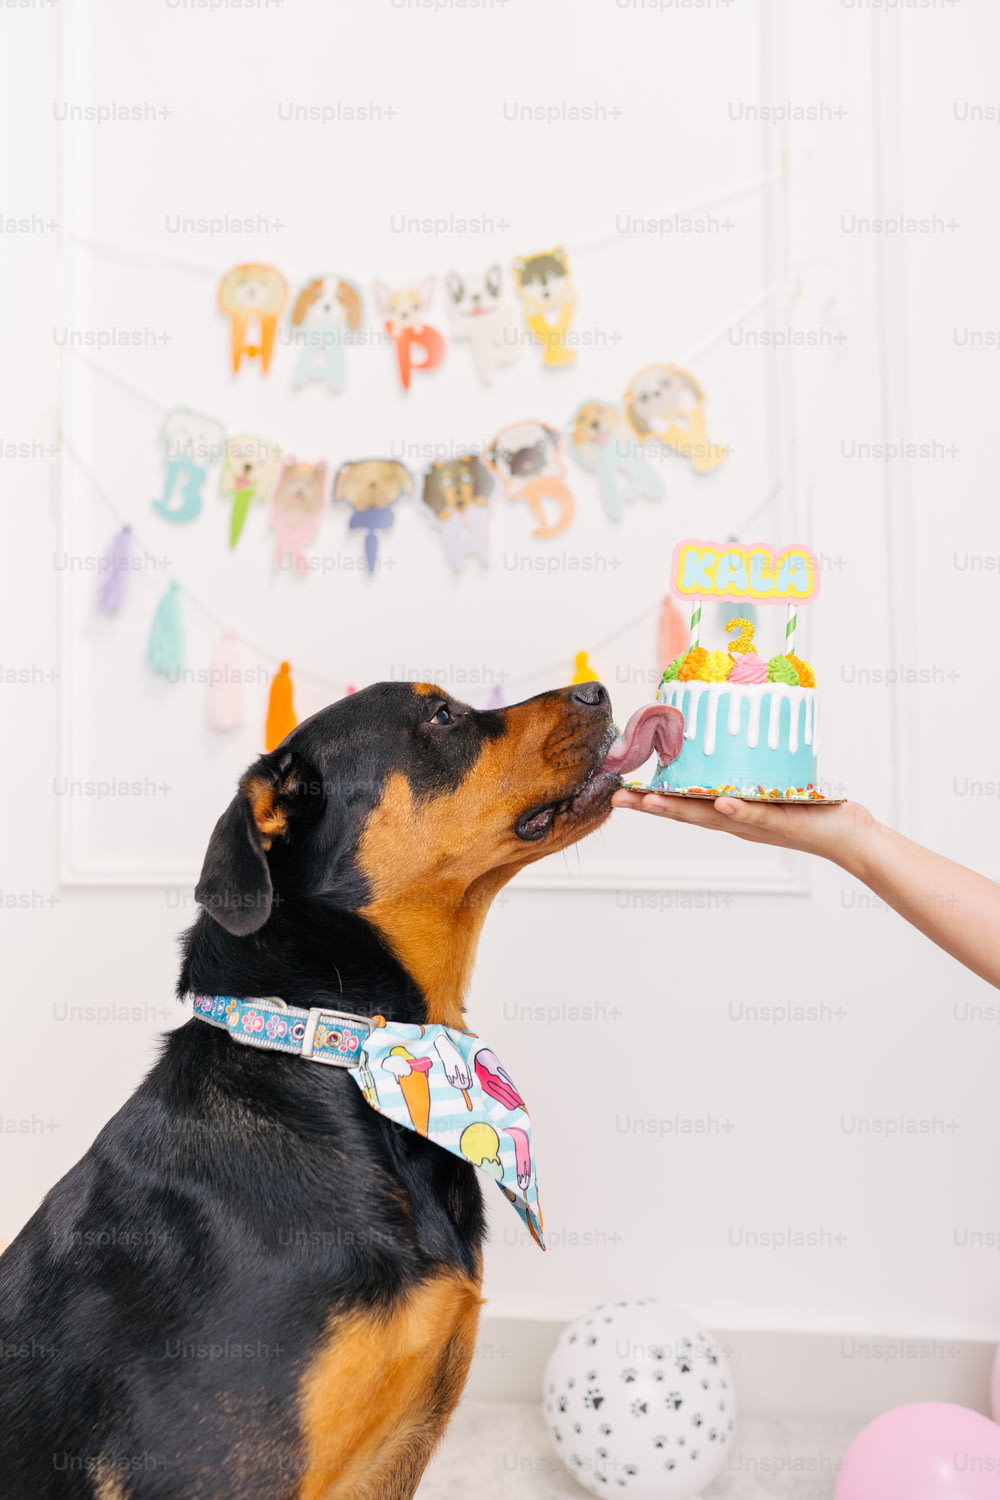 a person feeding a dog a birthday cake